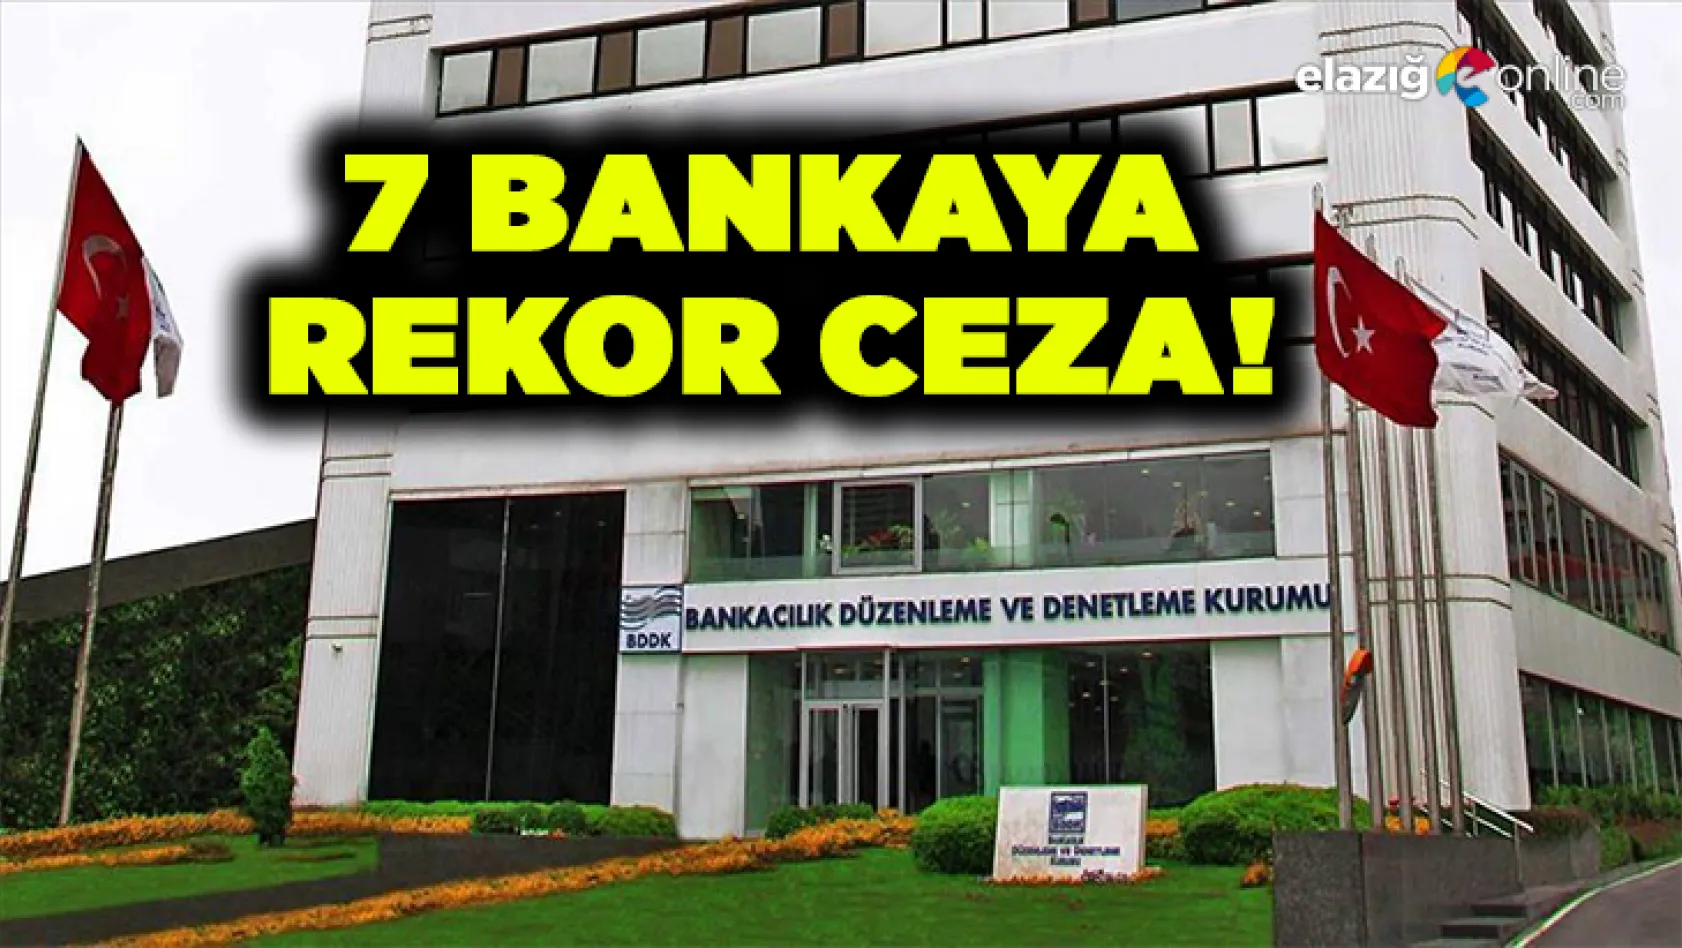 BDDK'dan 7 bankaya rekor ceza!